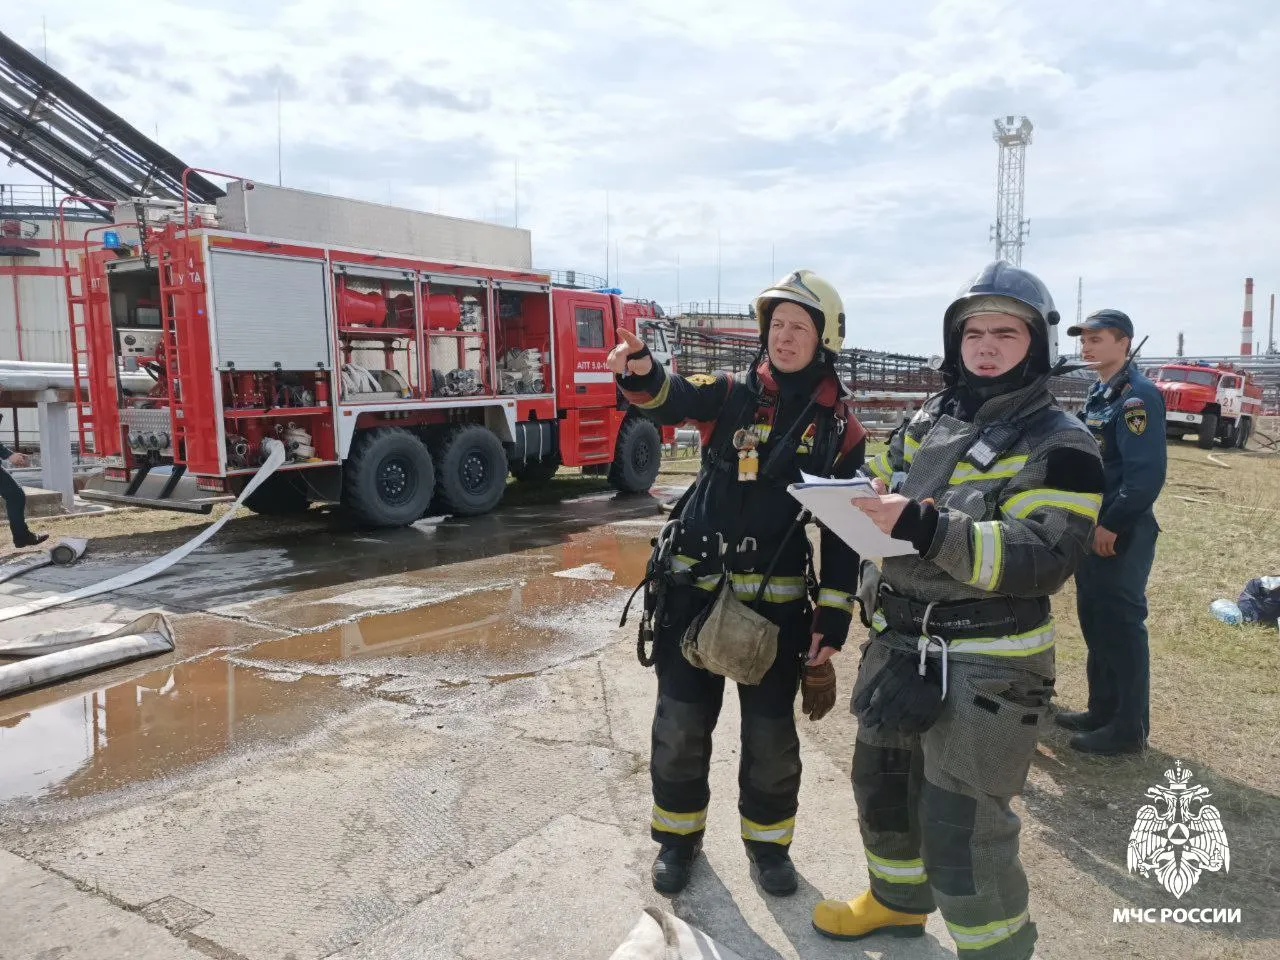 Спасатели локализовали пожар на Ухтинском НПЗ в Коми, где погибли два человека